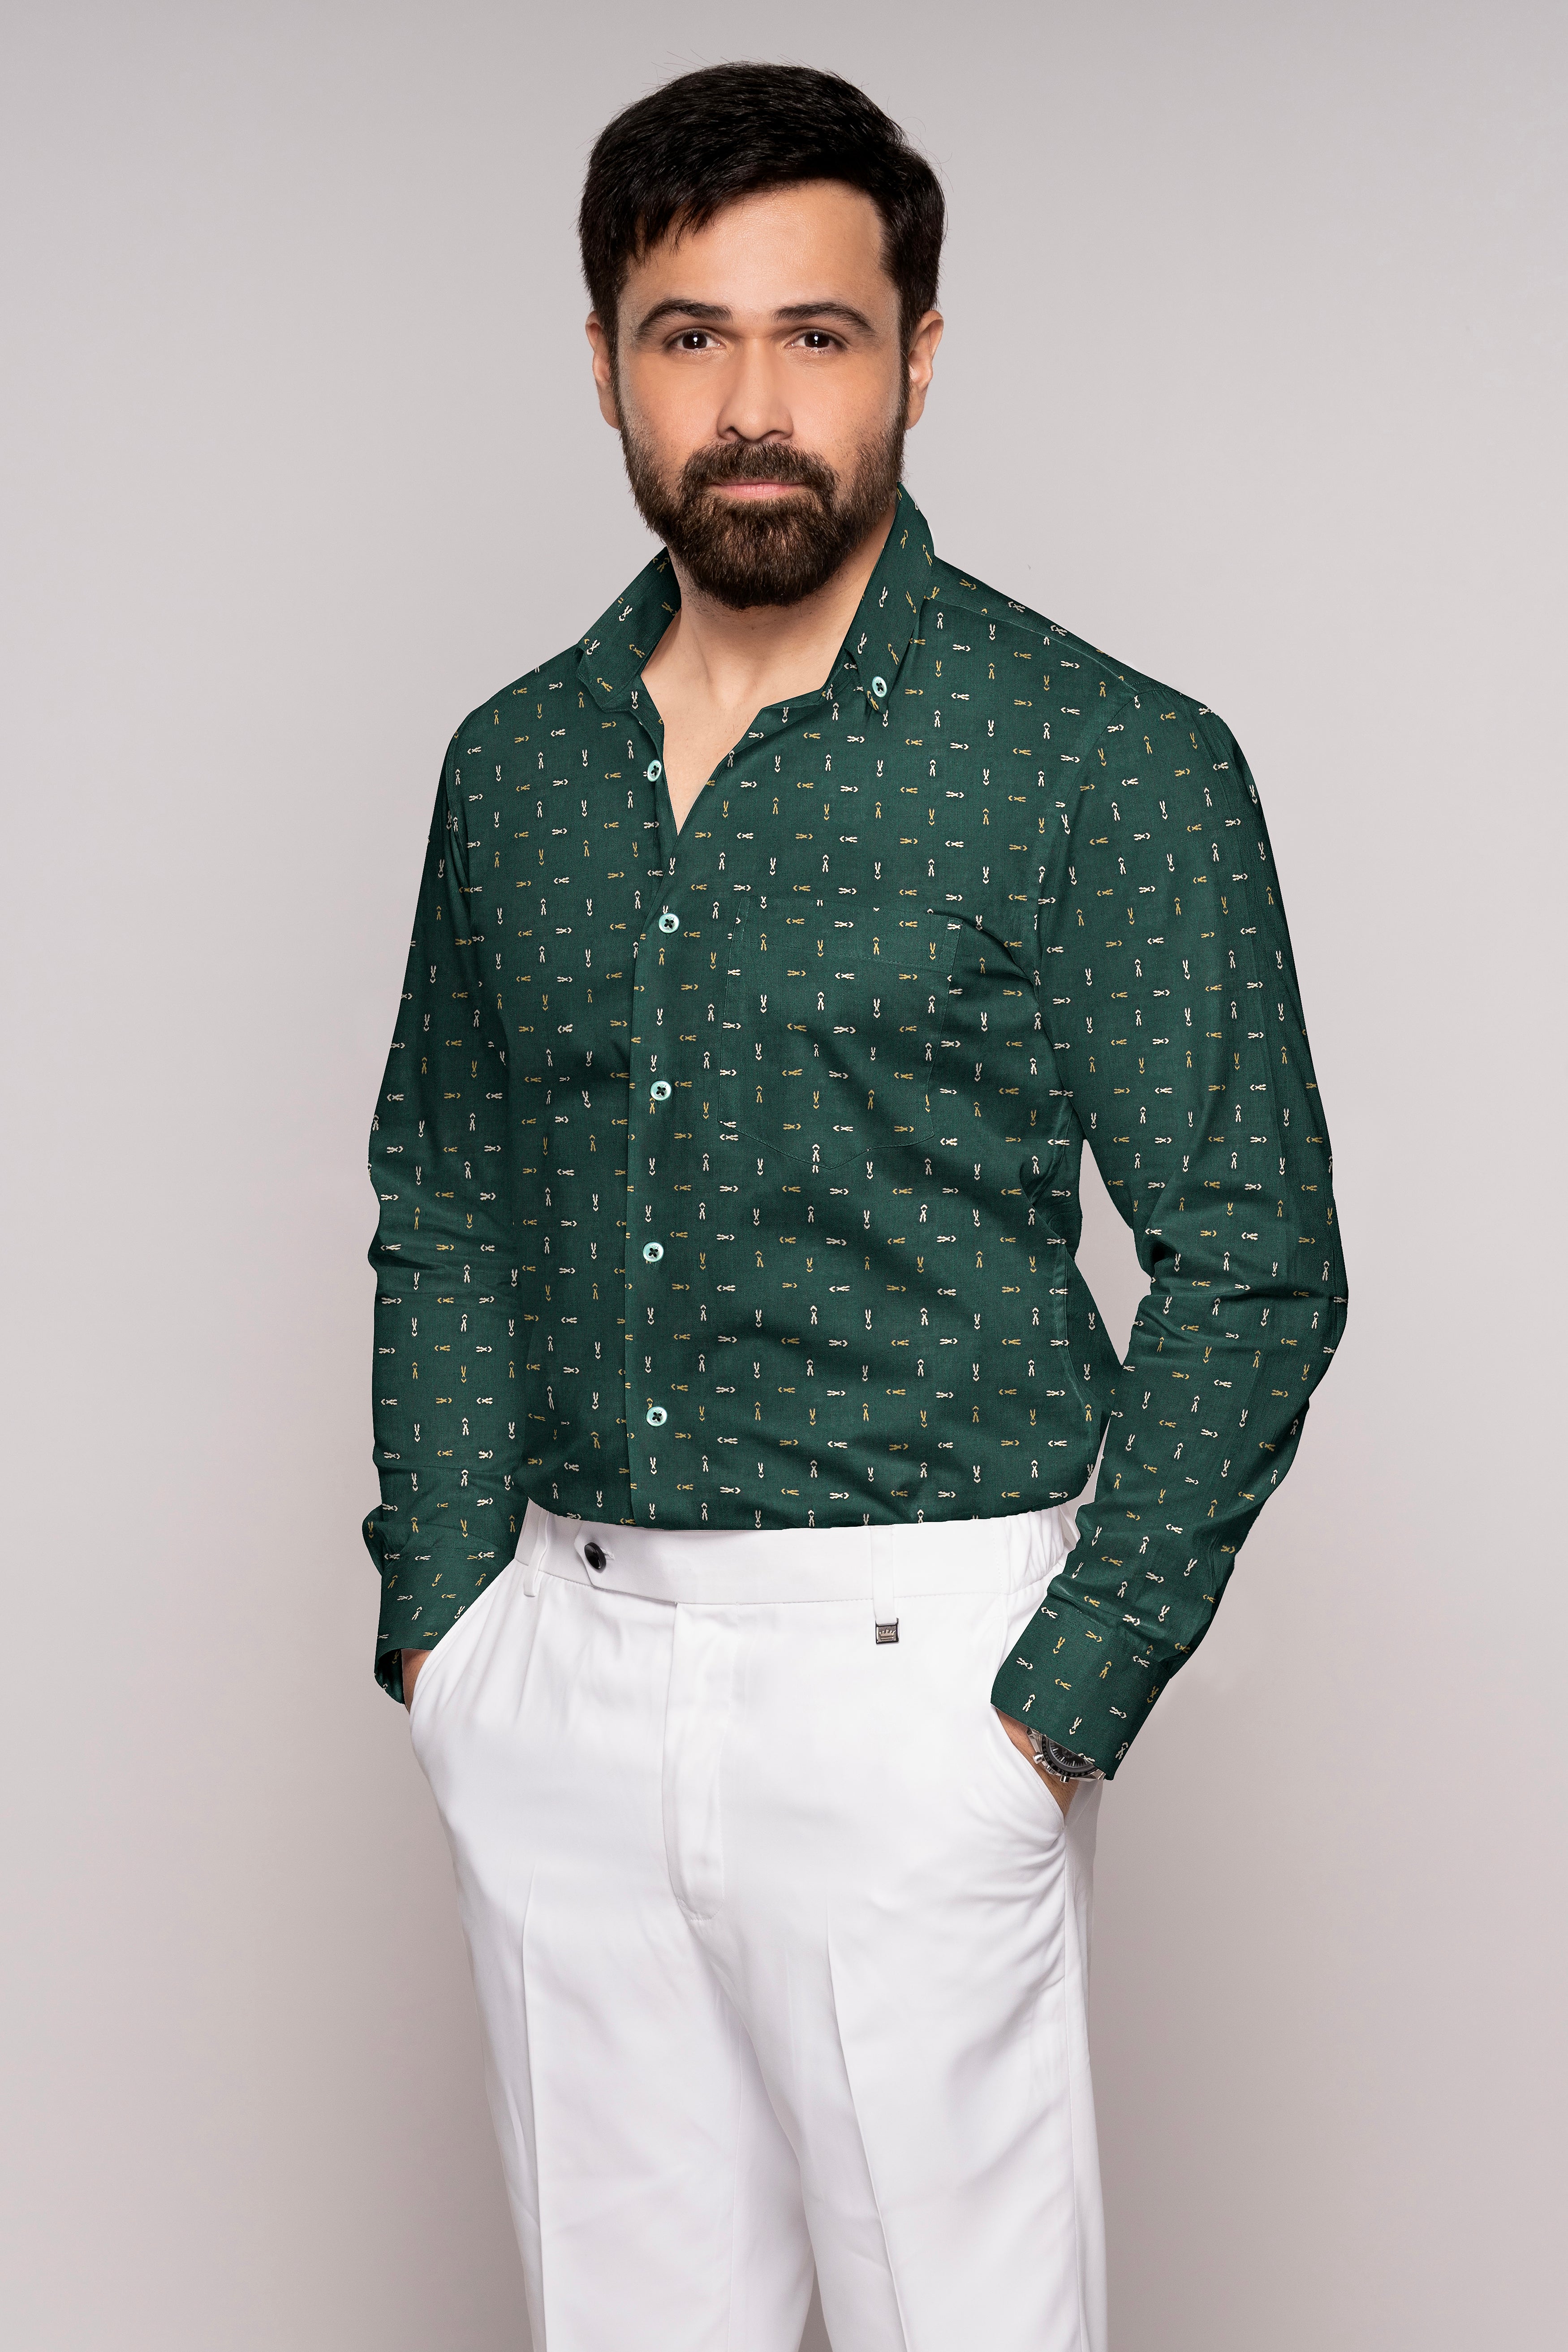 Everglade Green and Desert Brown Luxurious Linen Button Down Shirt